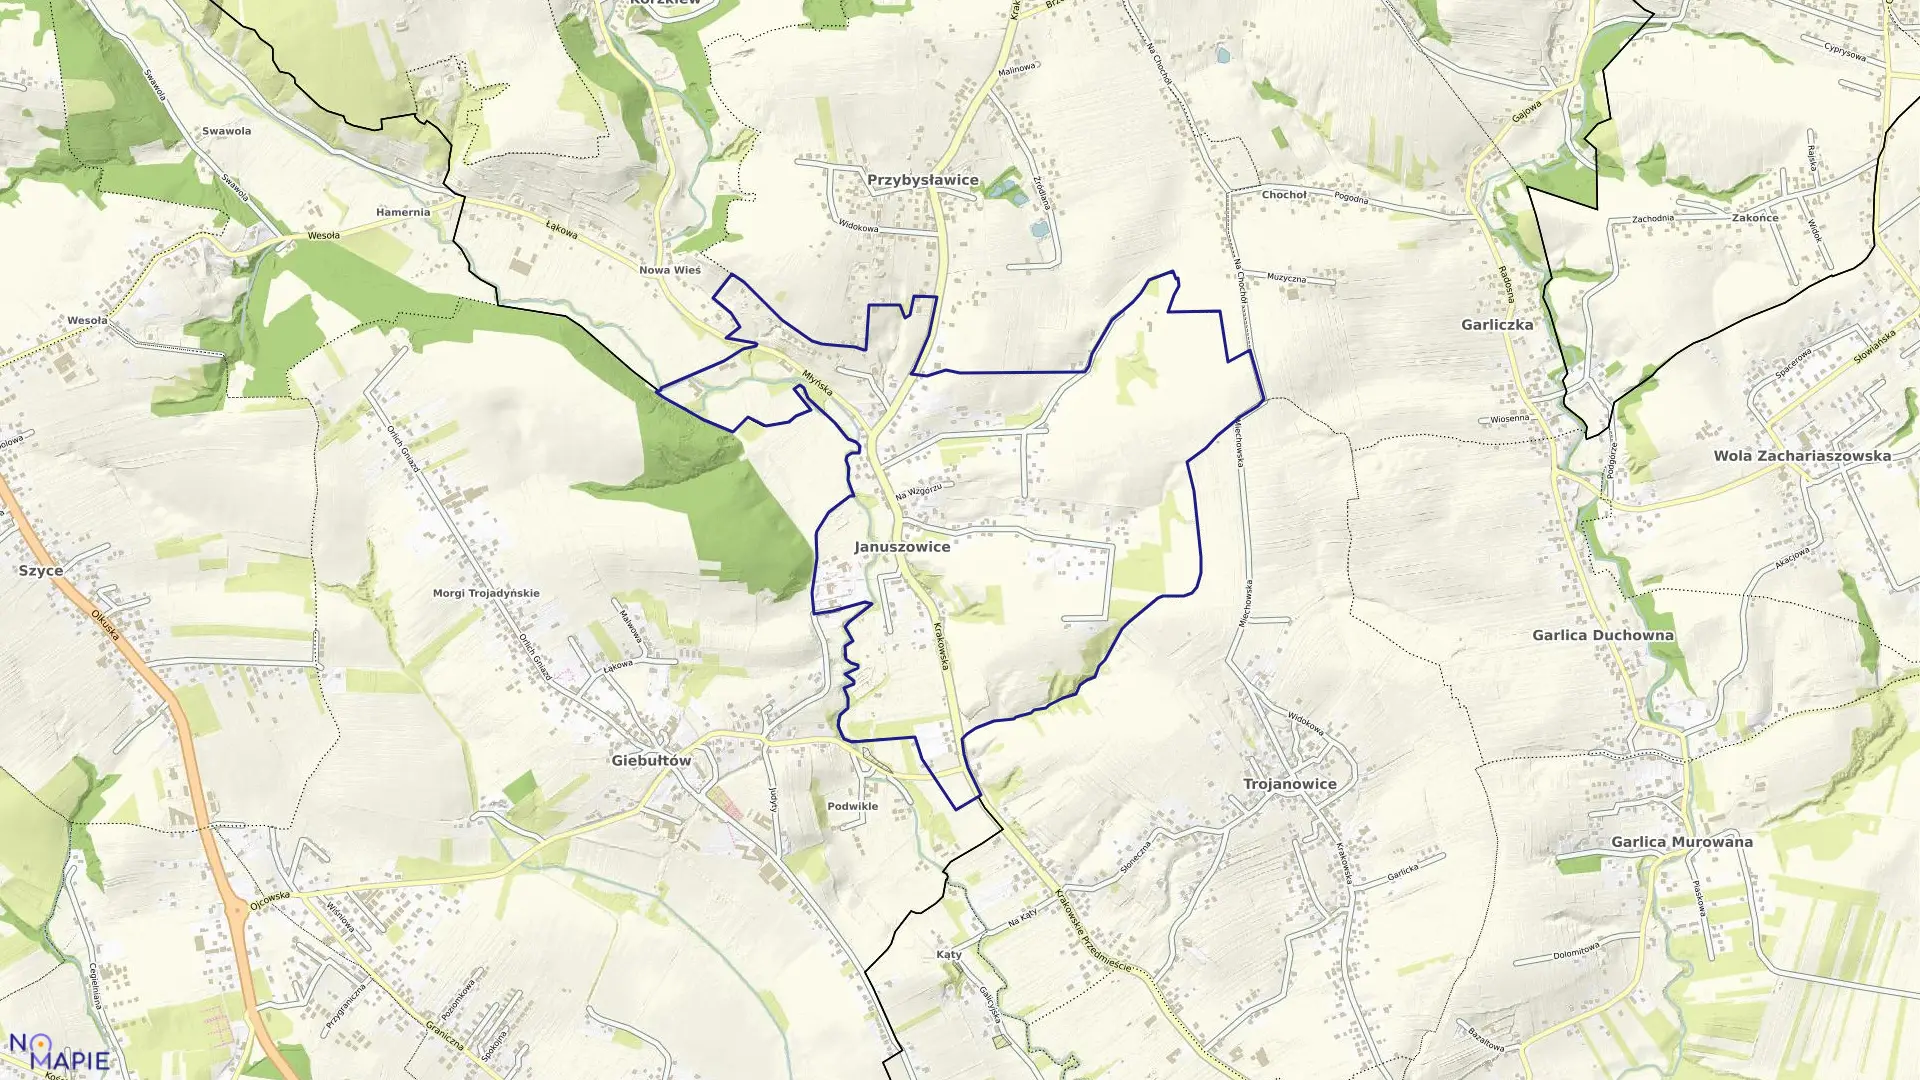 Mapa obrębu Januszowice w gminie Zielonki